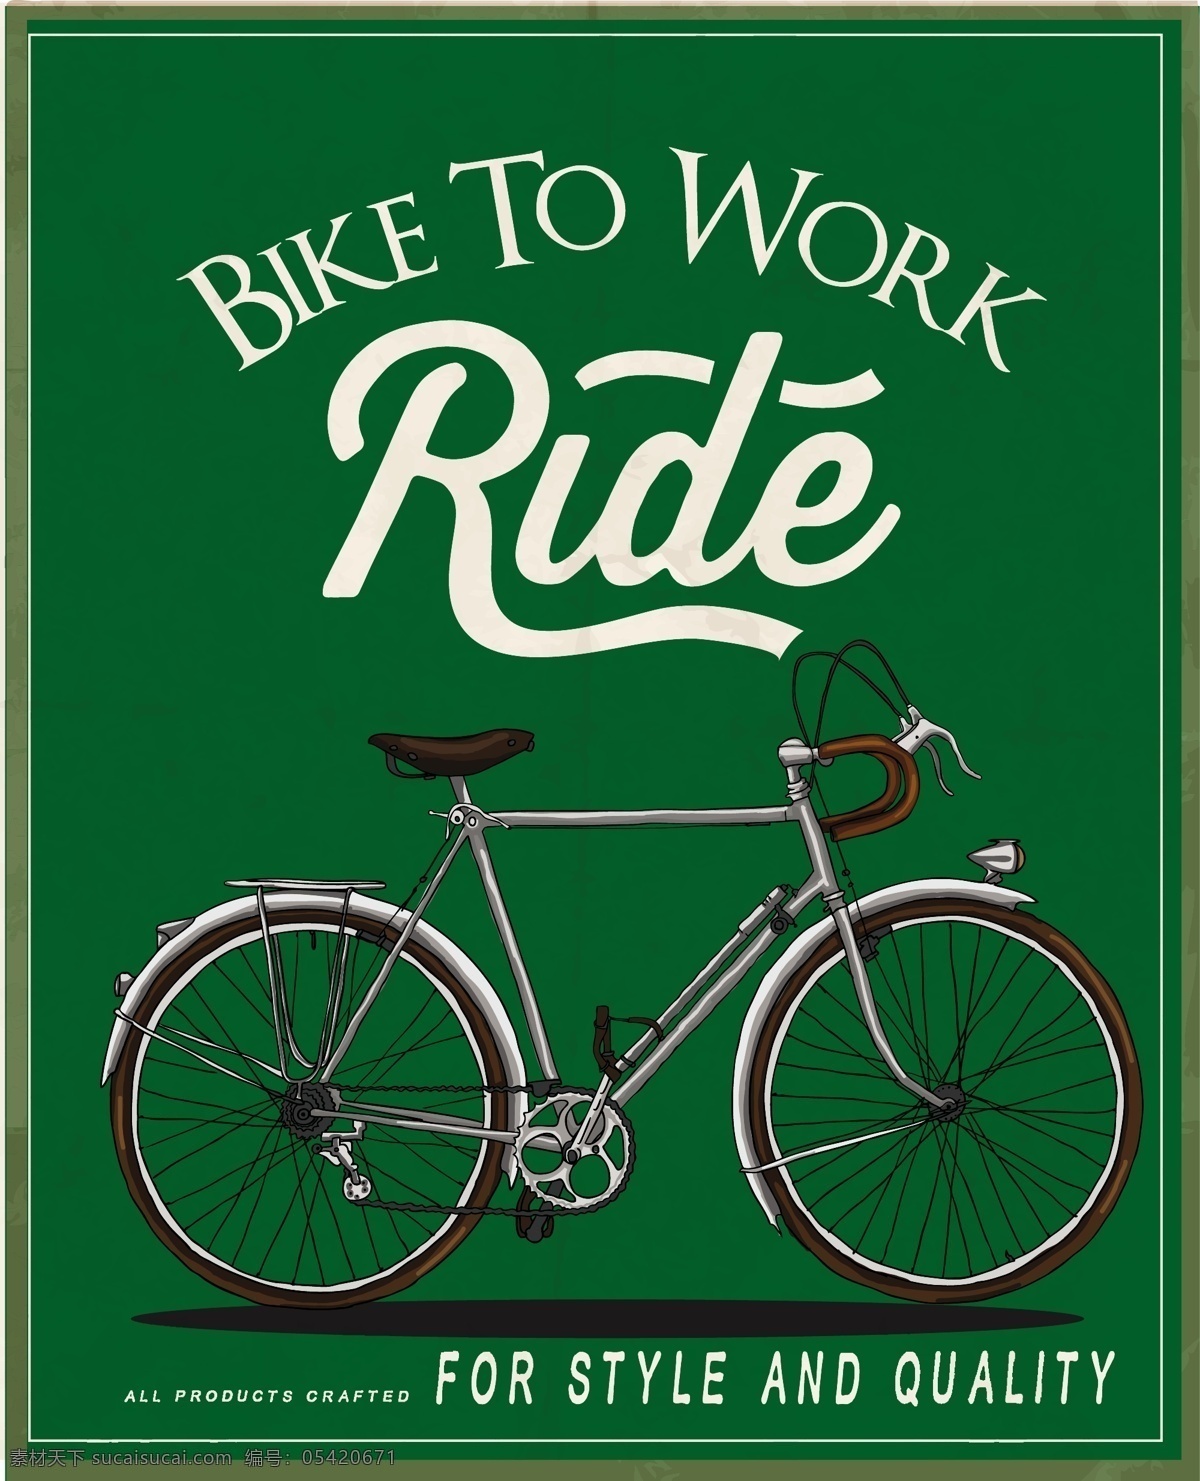 自行车 轻便 广告宣传 标志图标 矢量素材 黑色